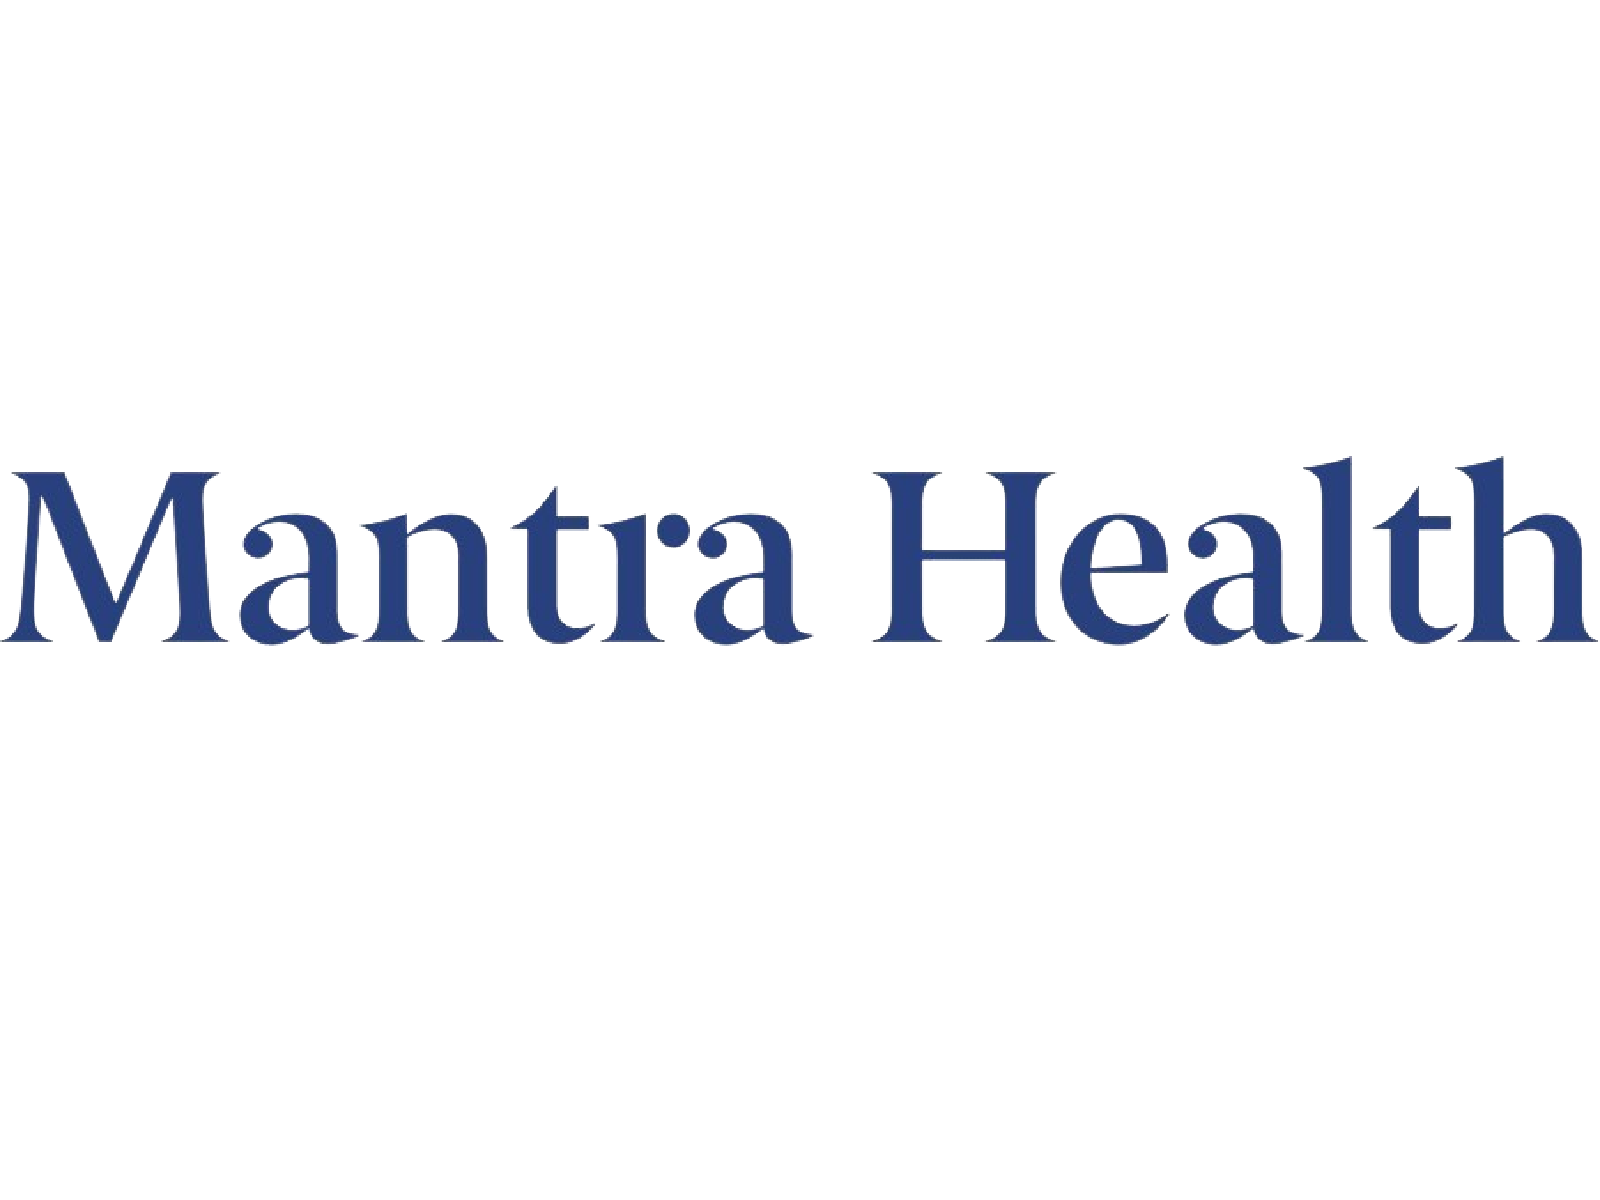 Mantra Health logo - transparent background.png